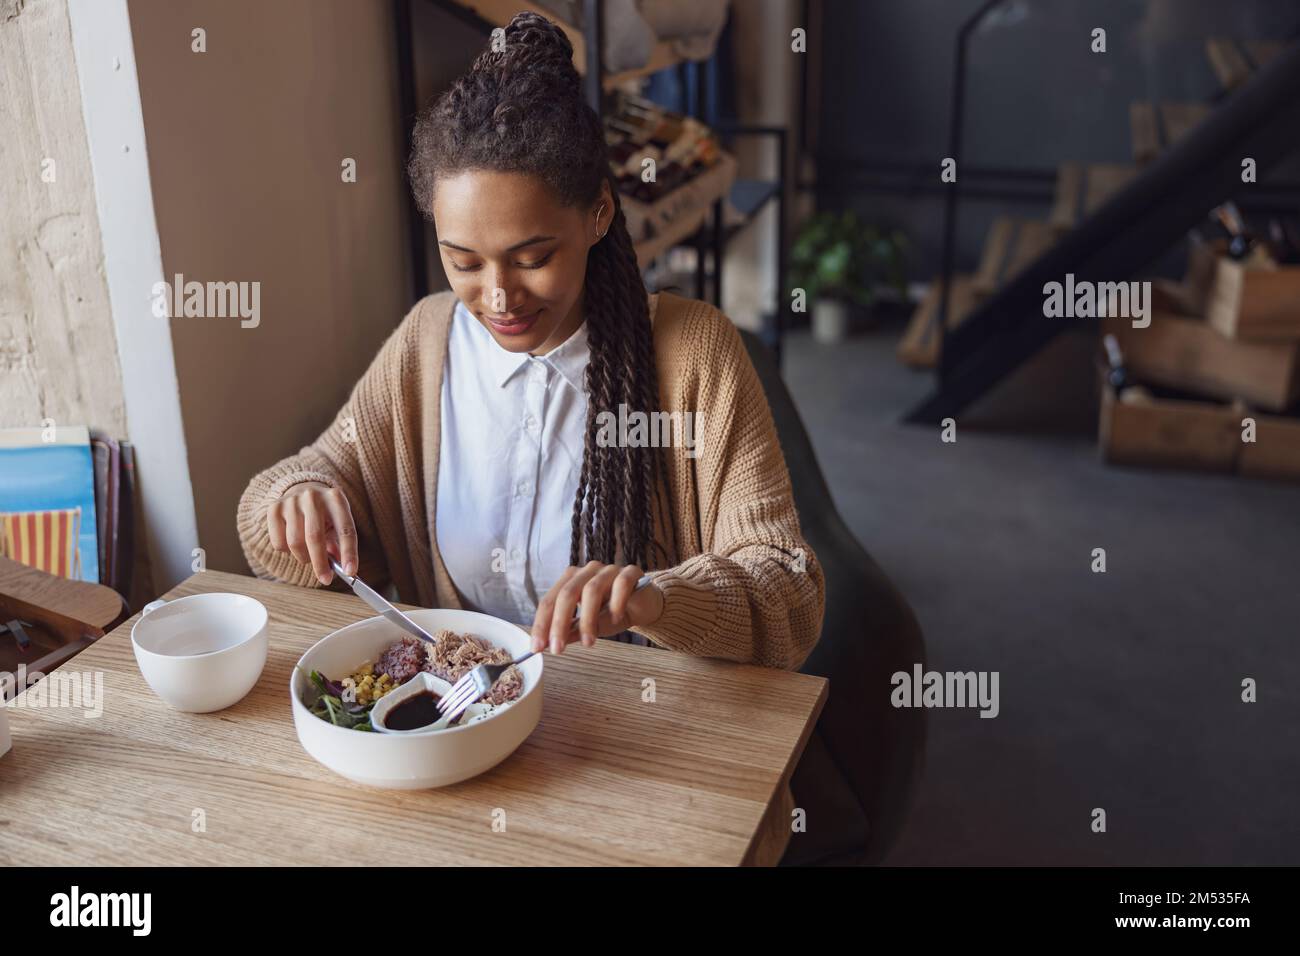 Eine junge afroamerikanische, wunderschöne Frau isst in einem Restaurant zu Mittag und probiert ein gesundes Gericht, serviert in einer weißen Schüssel Stockfoto